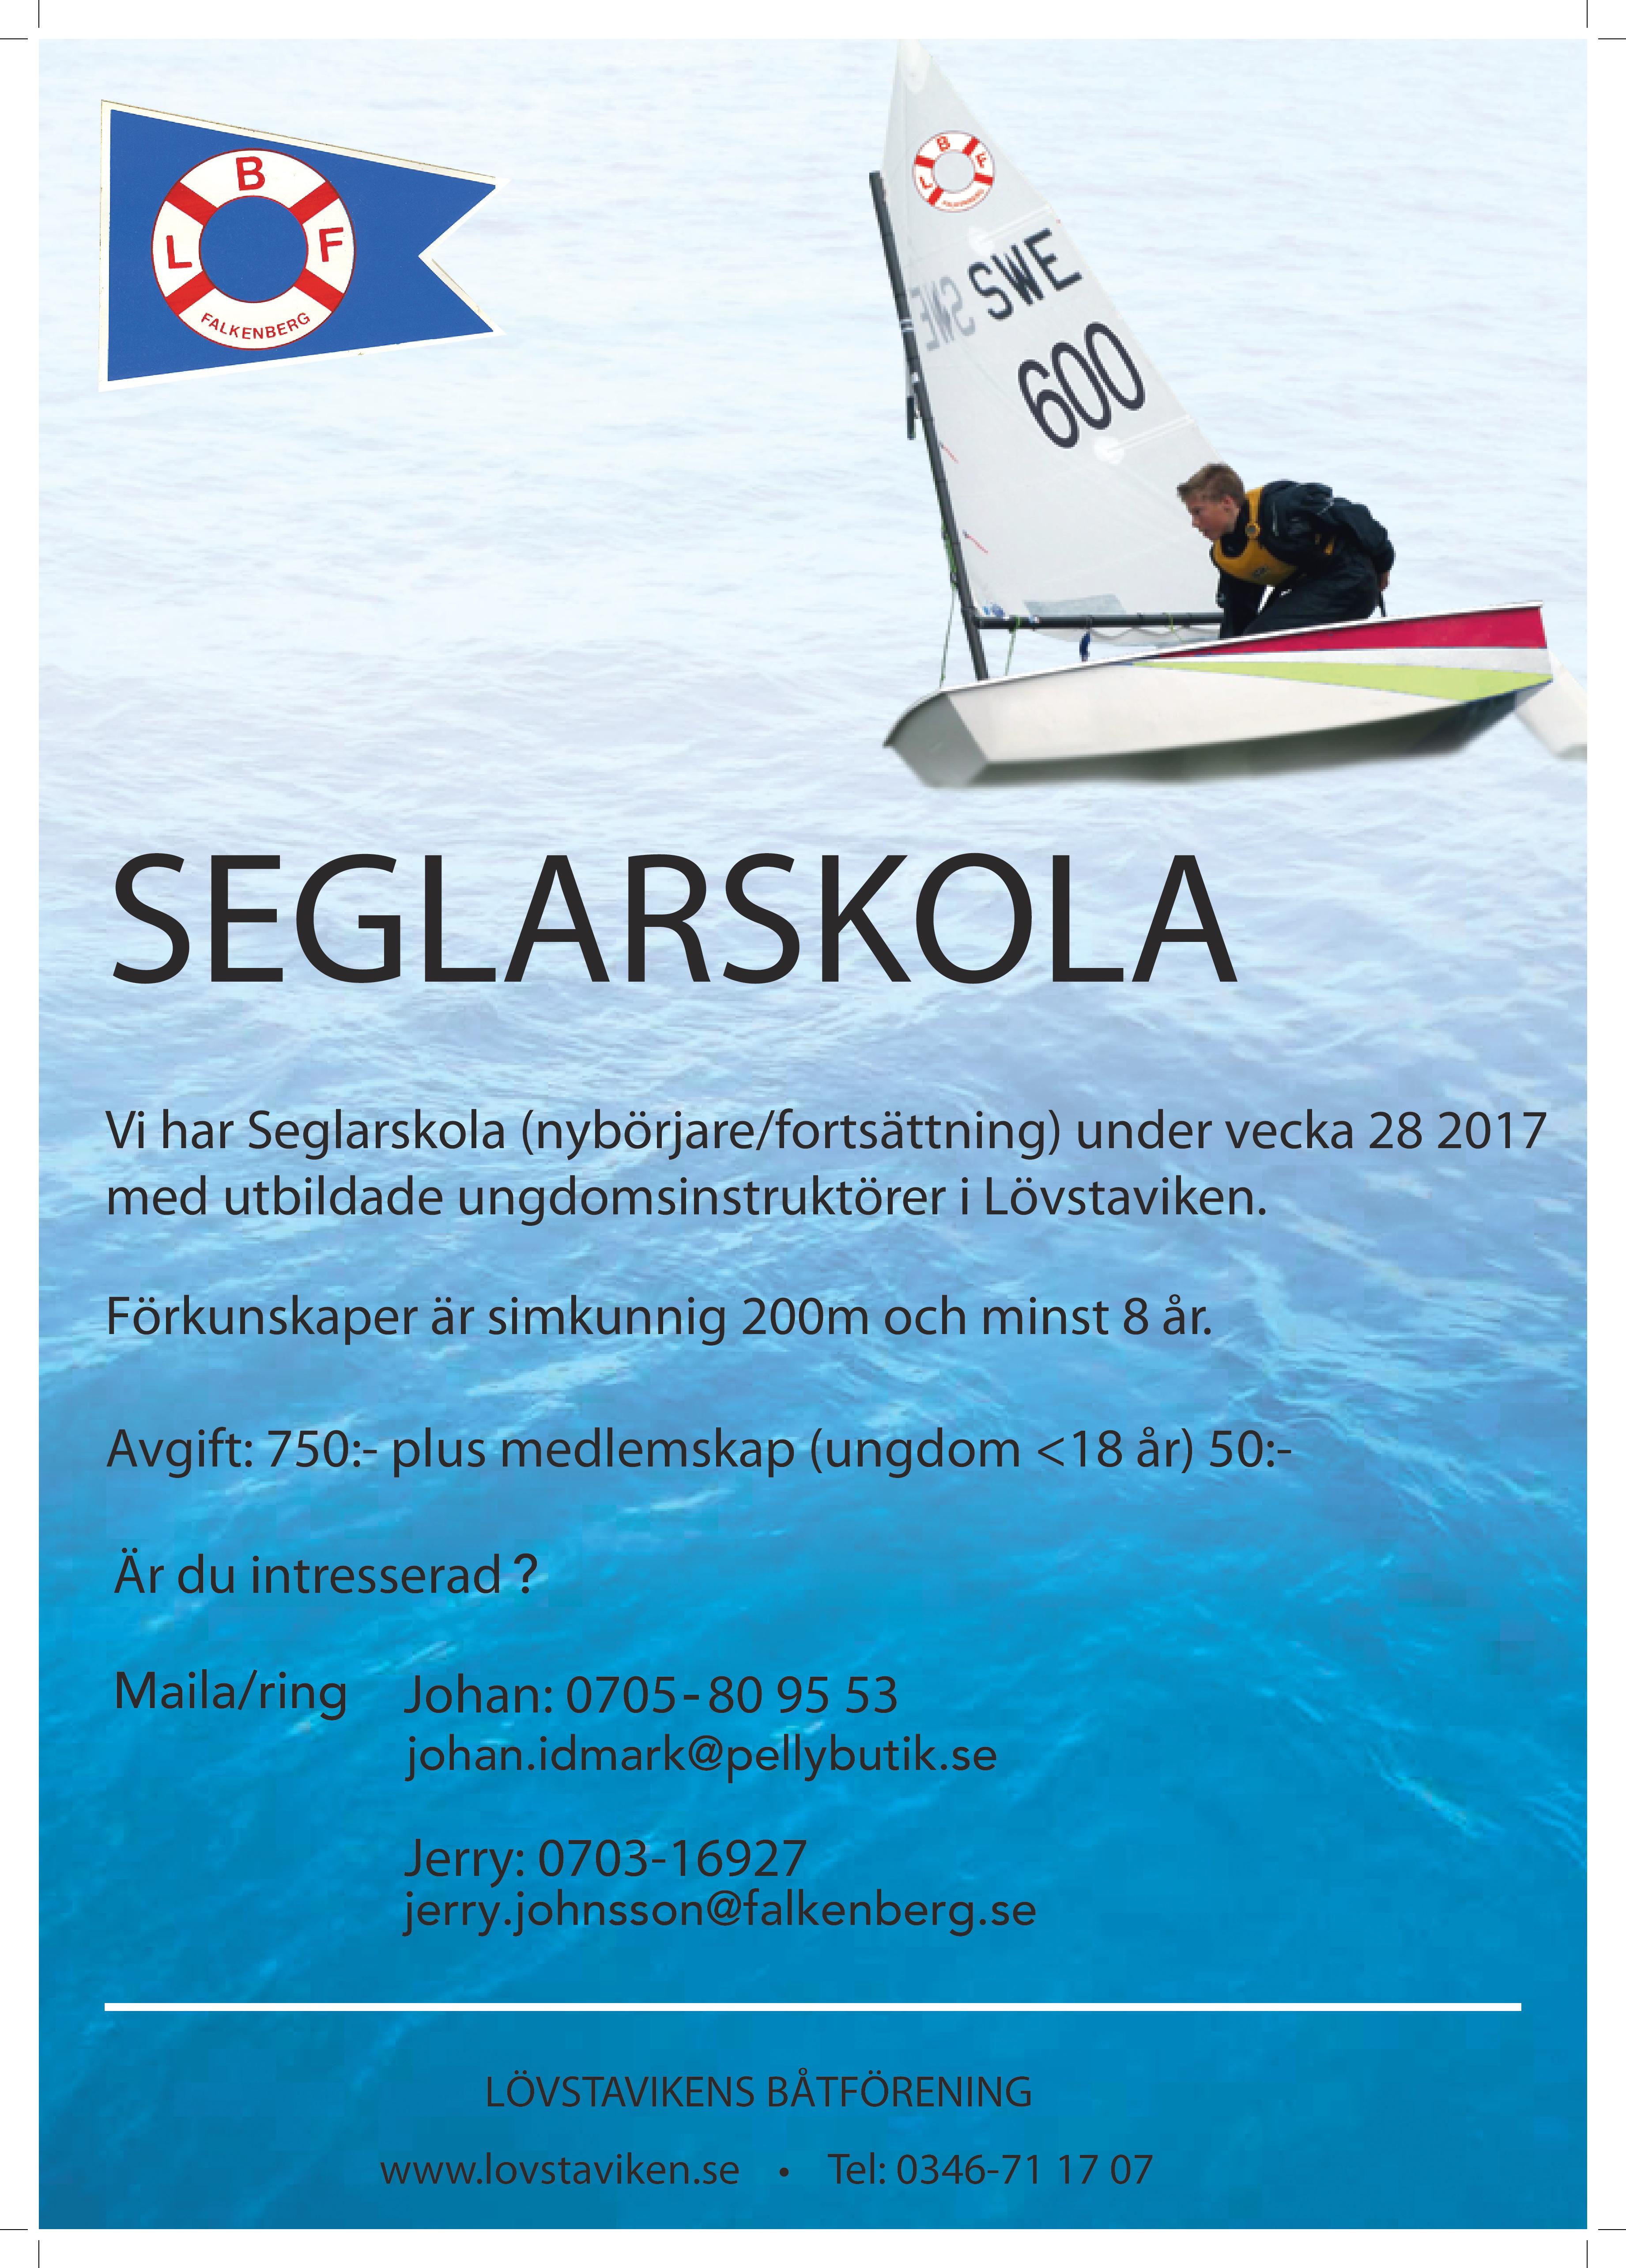 Seglarskola 2017-page-001